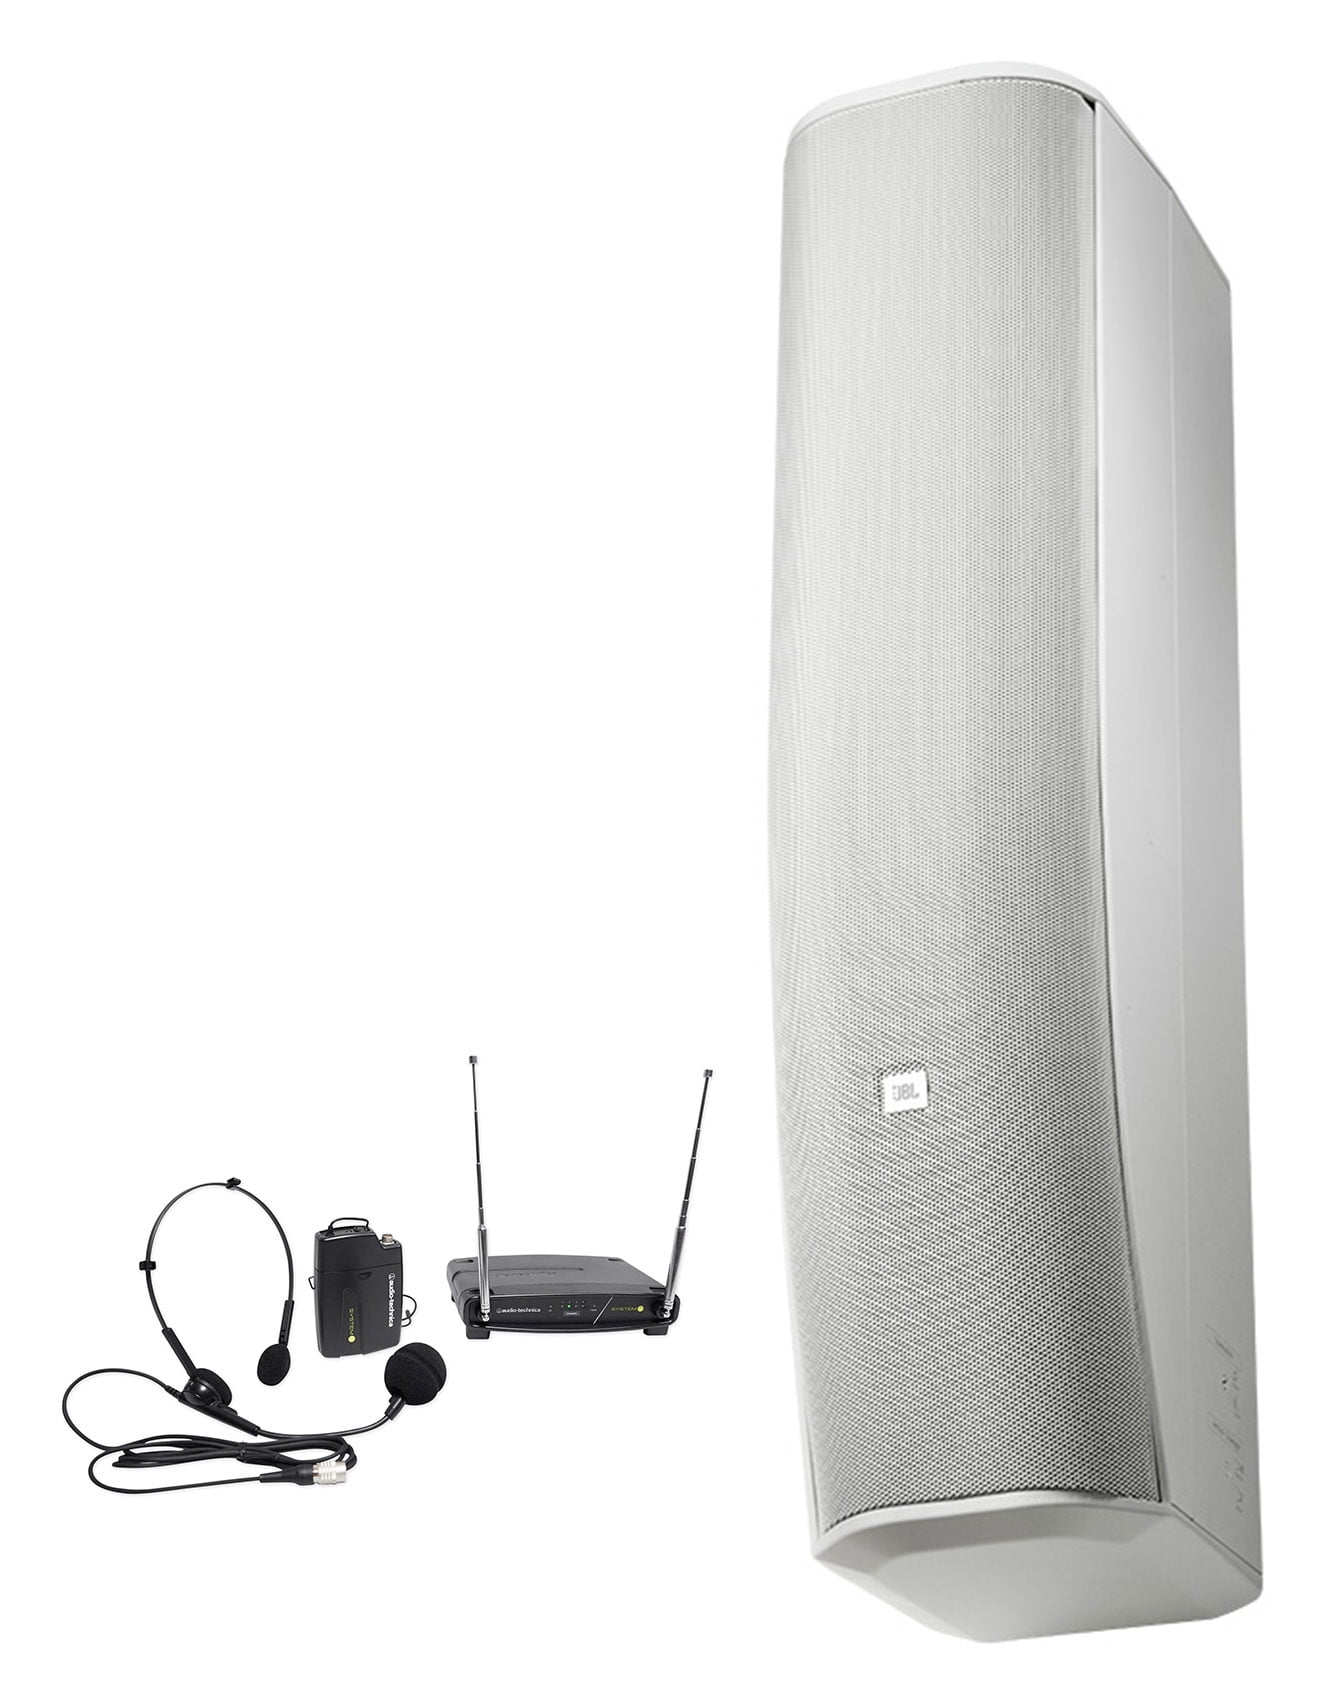 melodi hvile Formode JBL CBT 70J-1 500w White Swivel Wall Mount Line Array Column  Speaker+Headset Mic - Walmart.com